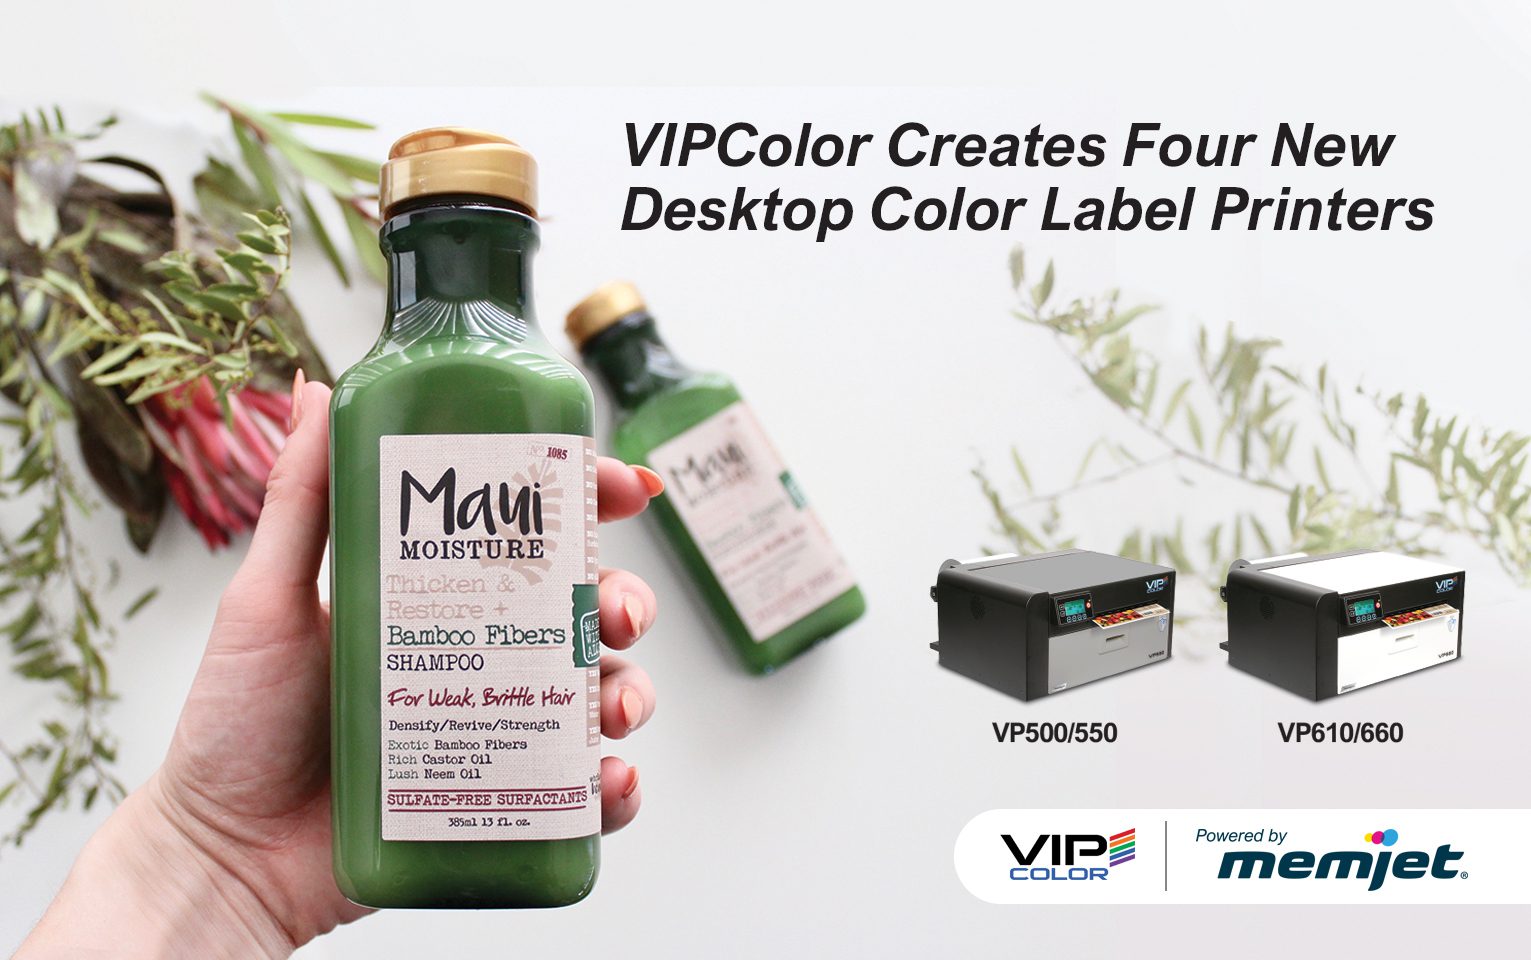 VIPColor Creates Four New Desktop Color Label Printers